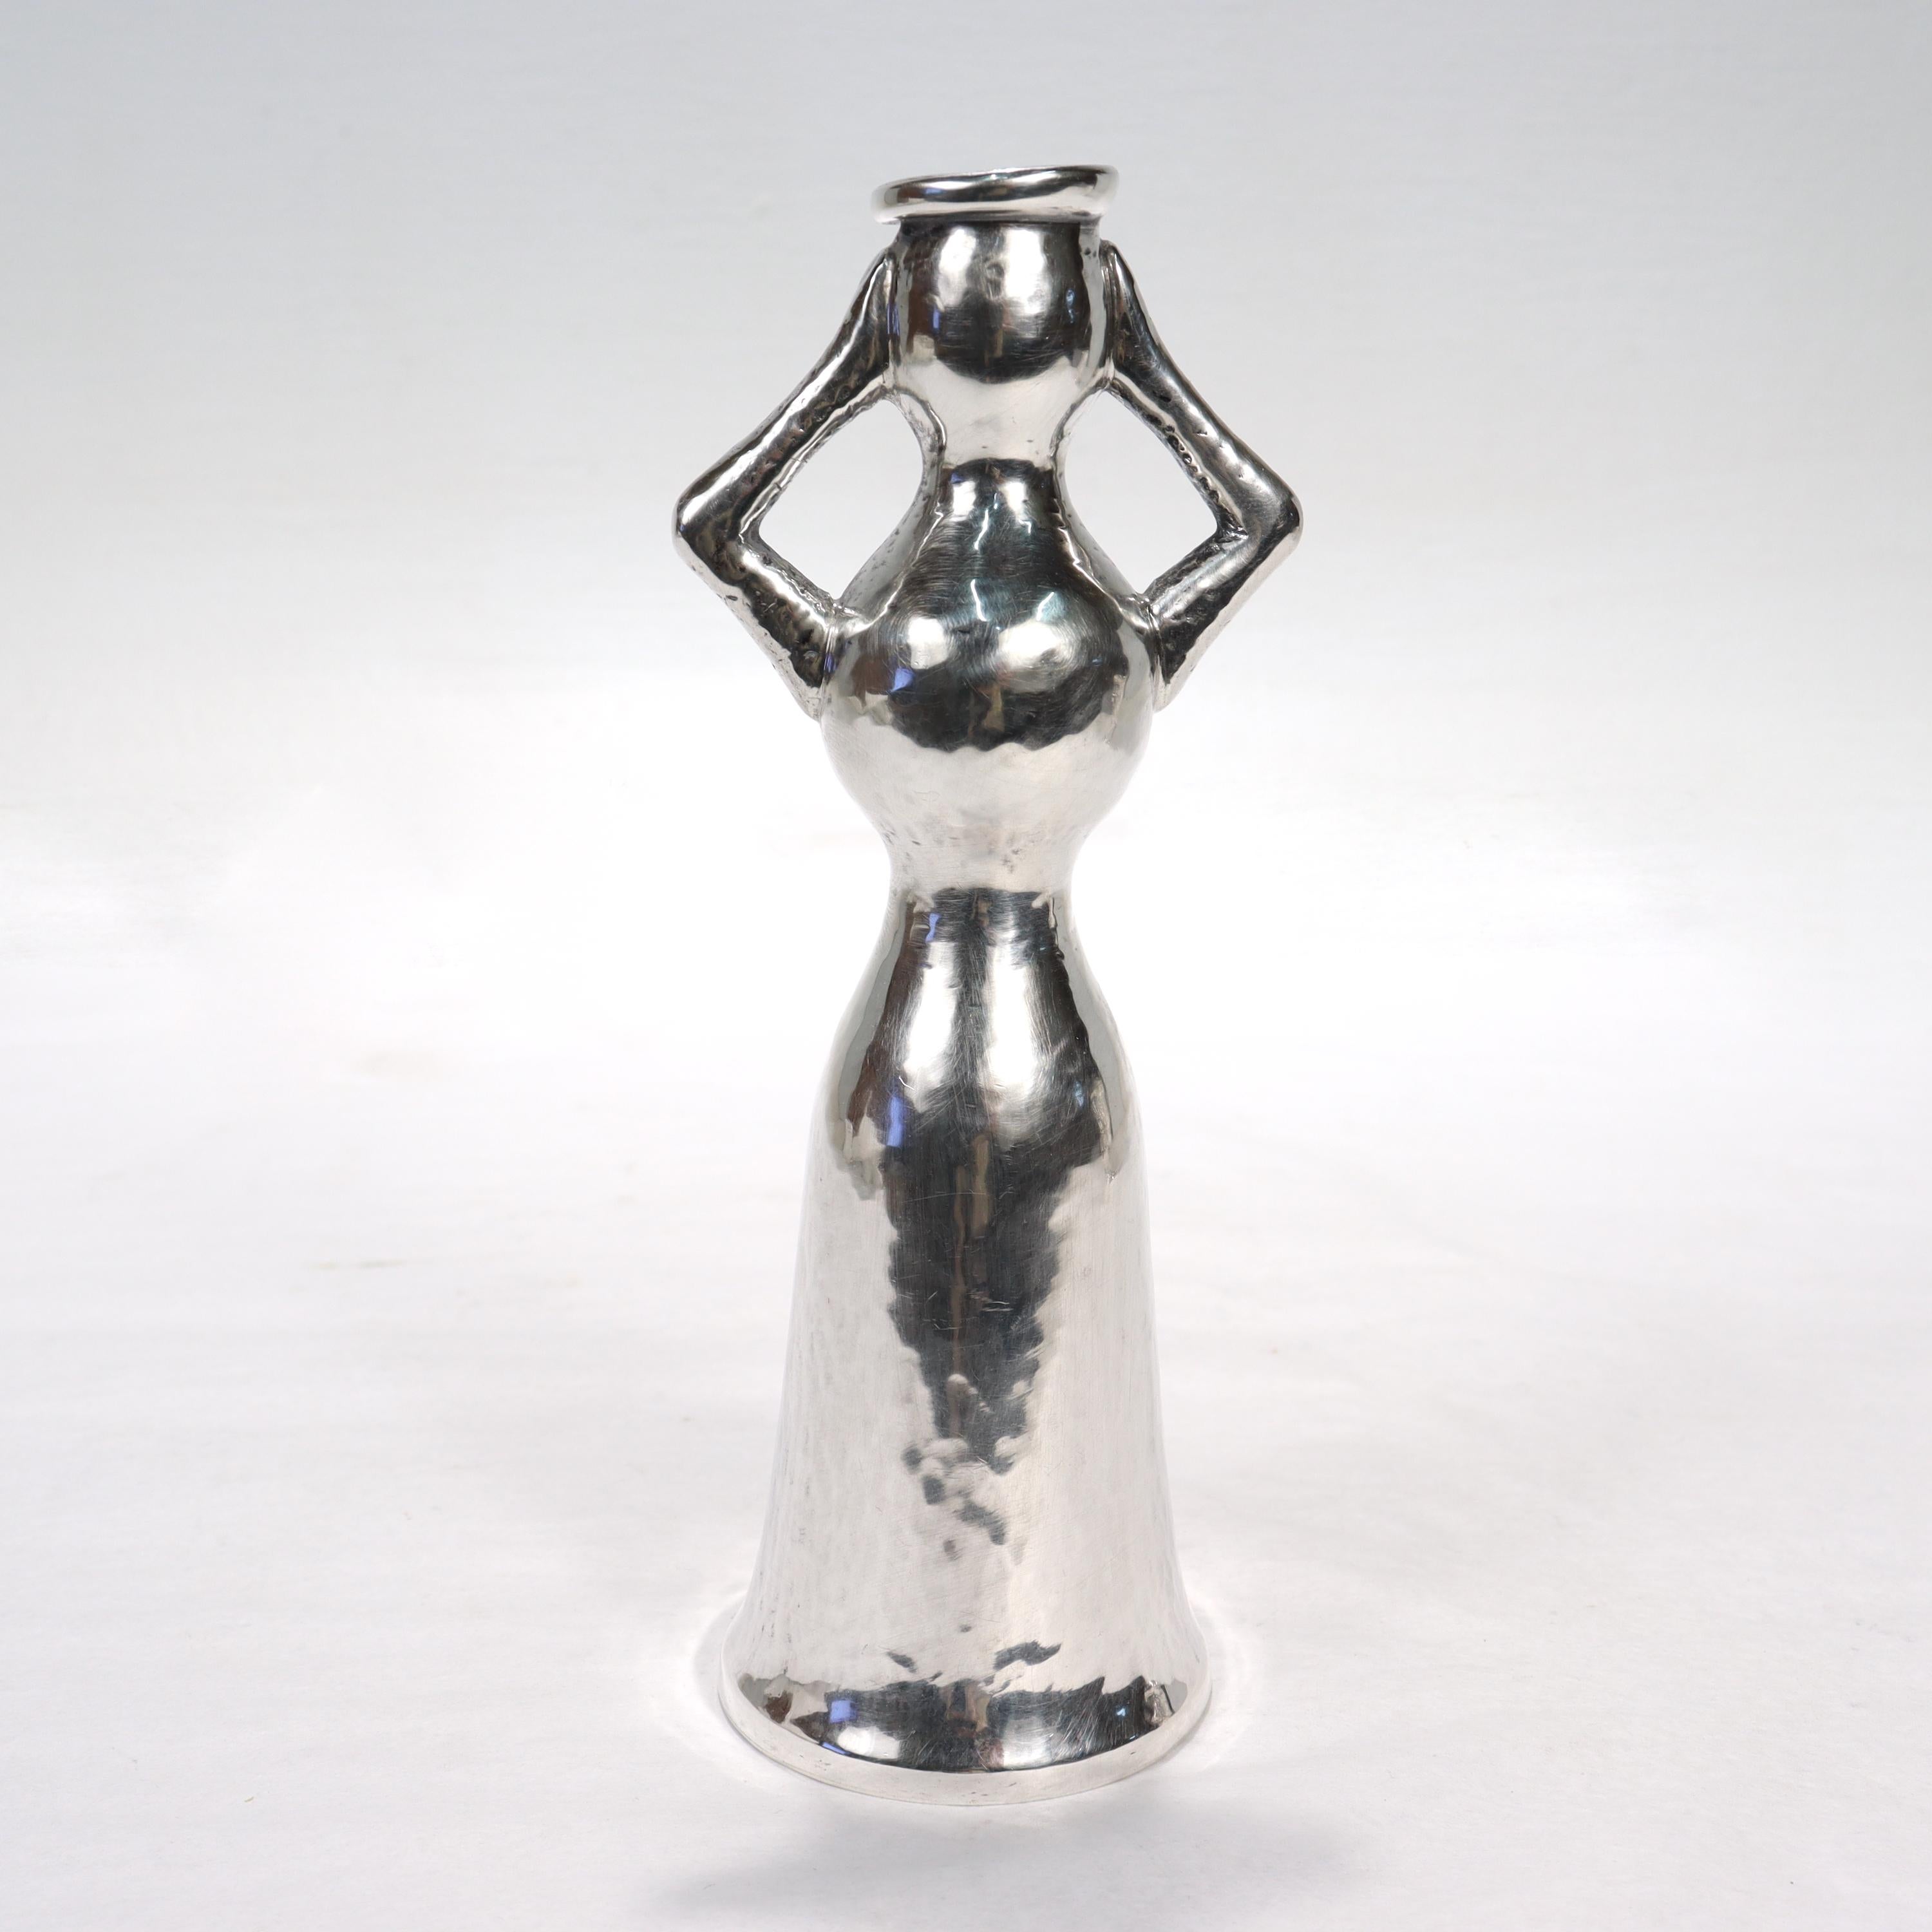 Eine schöne Vintage-Vase von Lalounis.

Aus Sterlingsilber. 

(Er kann auch als Kerzenständer verwendet werden.)

In der stilisierten Form einer Frau (eine Hommage an archaische griechische Fruchtbarkeitsformen) mit Armen, die die Vasenöffnung oder